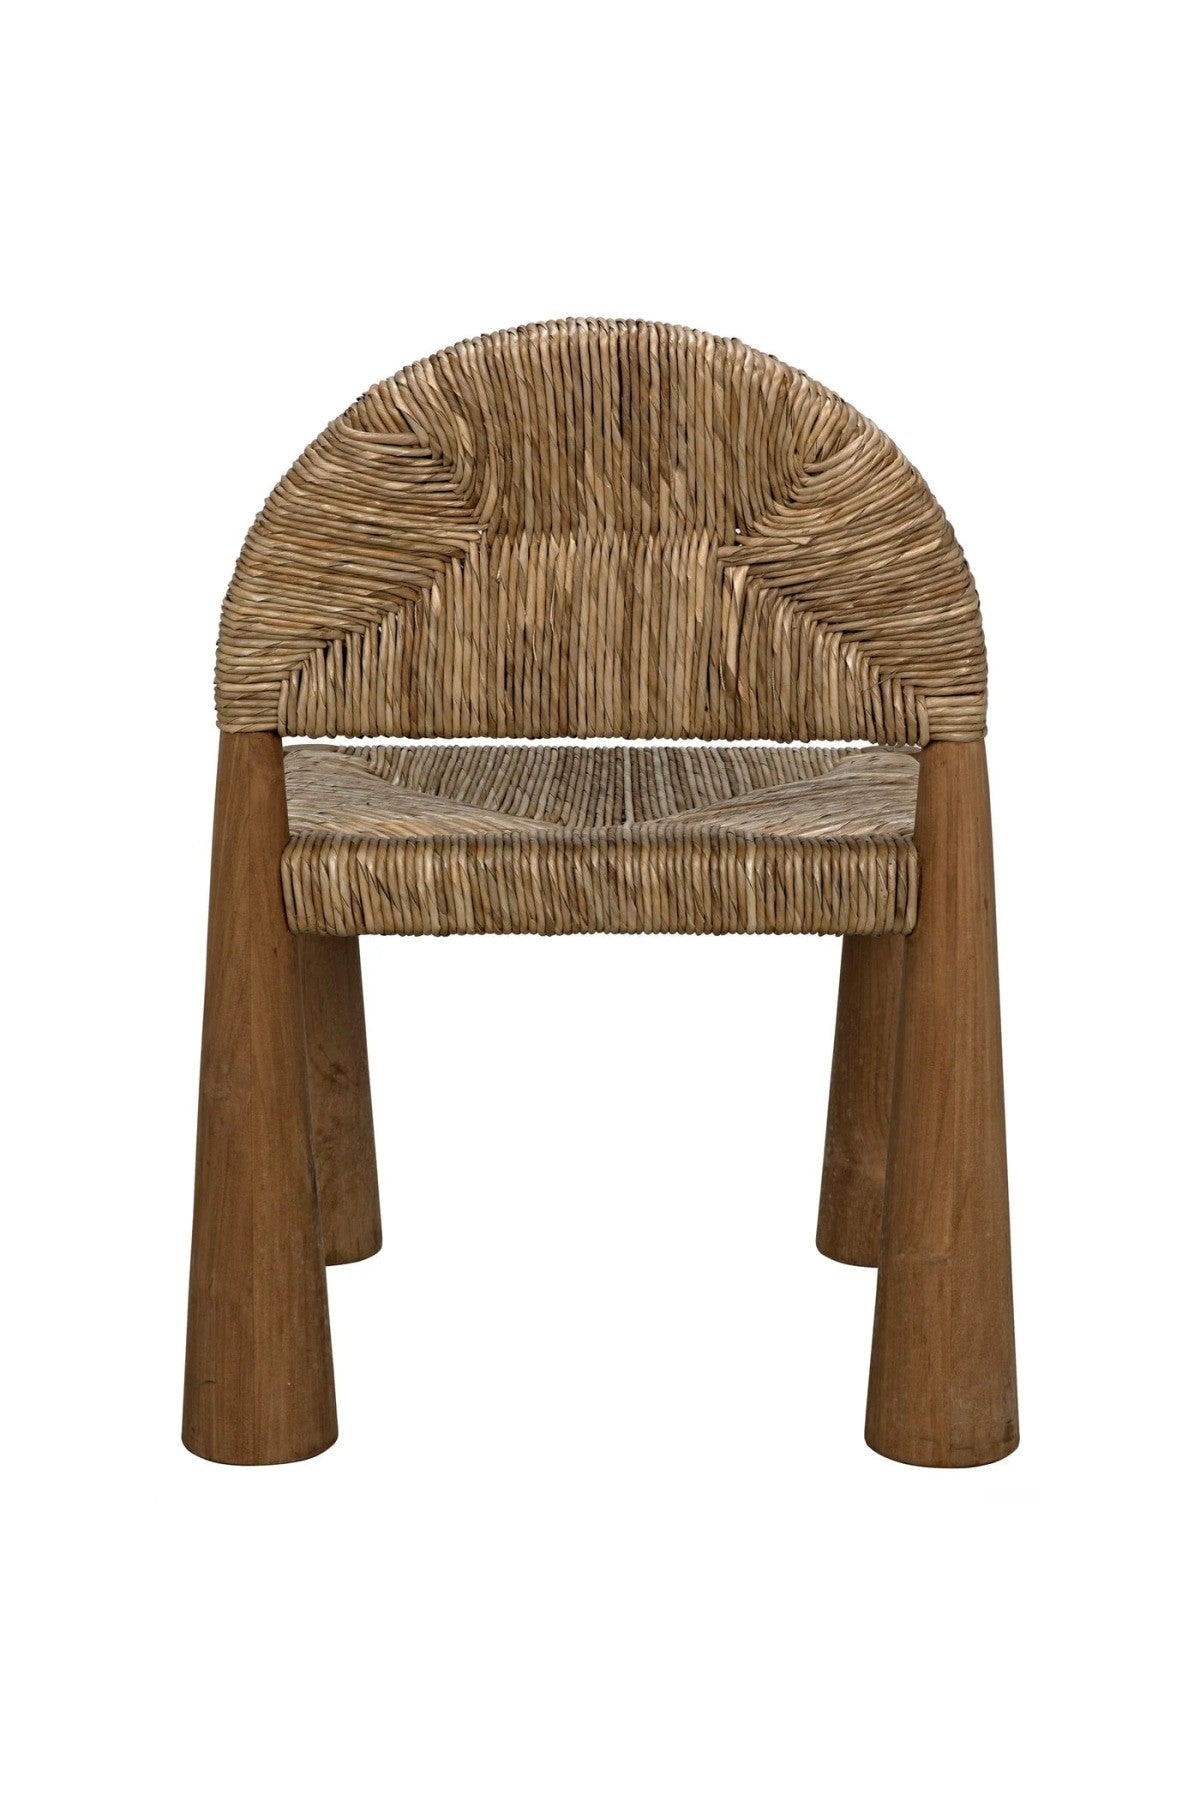 Laredo Chair